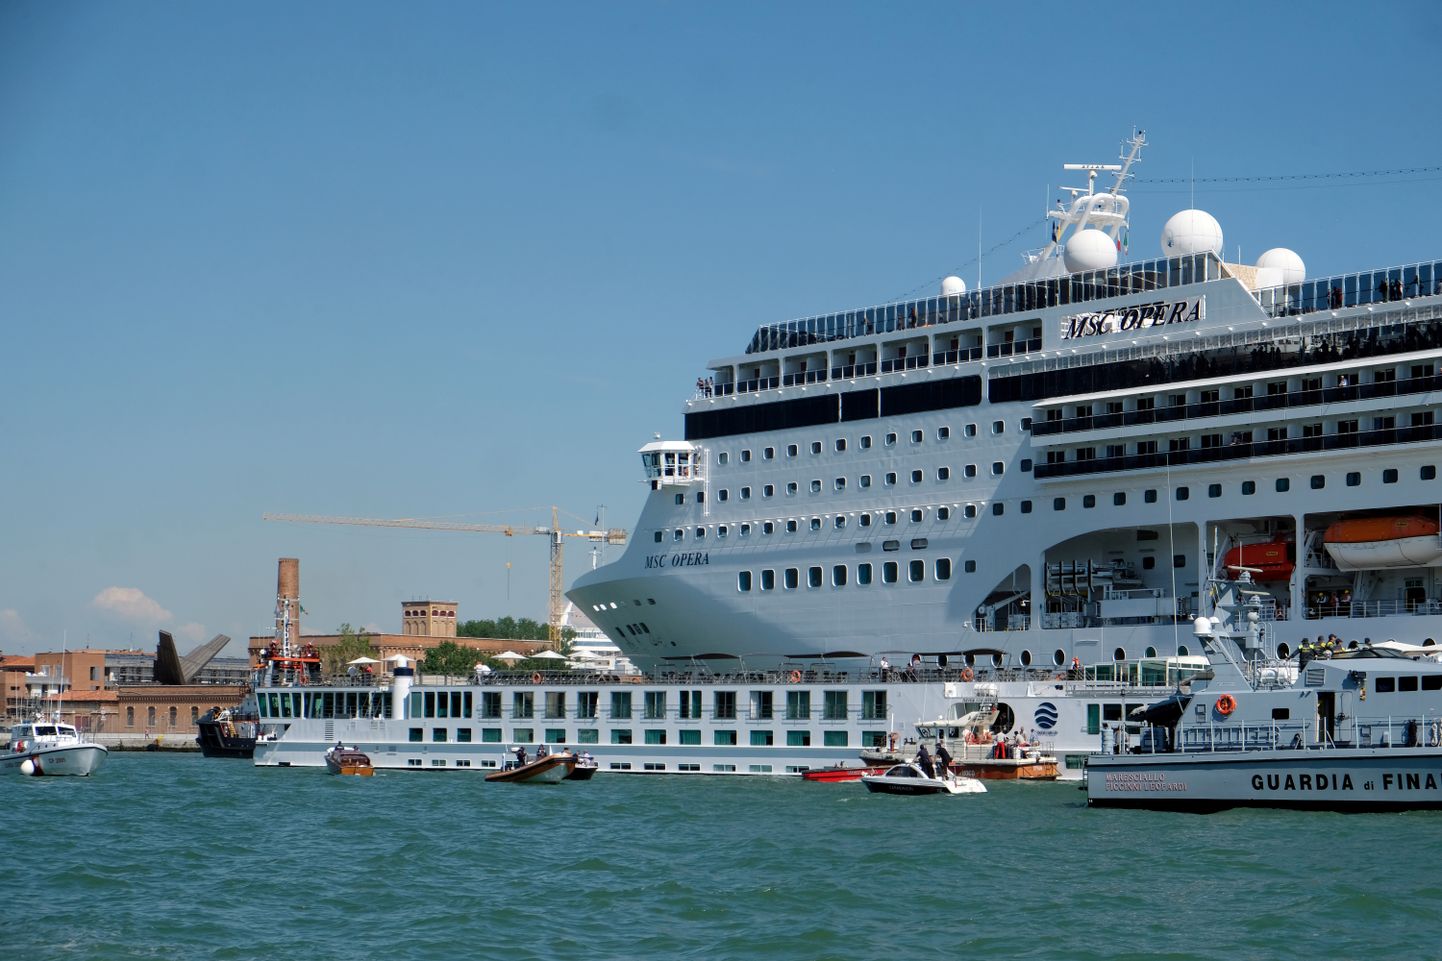 Kruiisilaev MSC Opera kaotas Veneetsia San Basilio sadamasse sisenedes kontrolli ning rammis väiksemat turistilaeva.